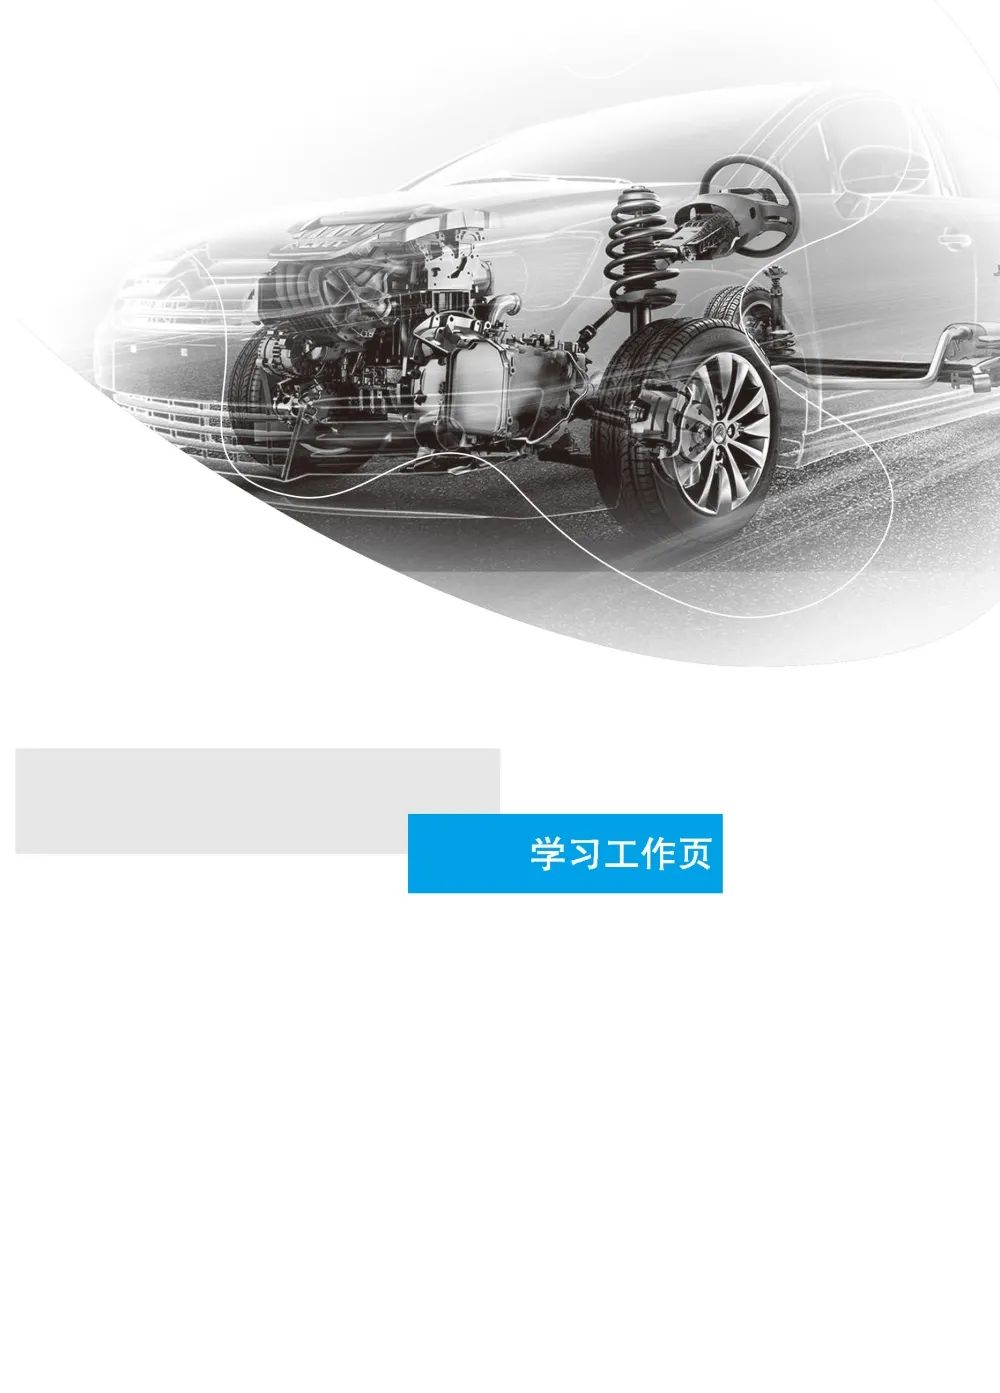 汽车机械基础-目录-样章_页面_04.jpg